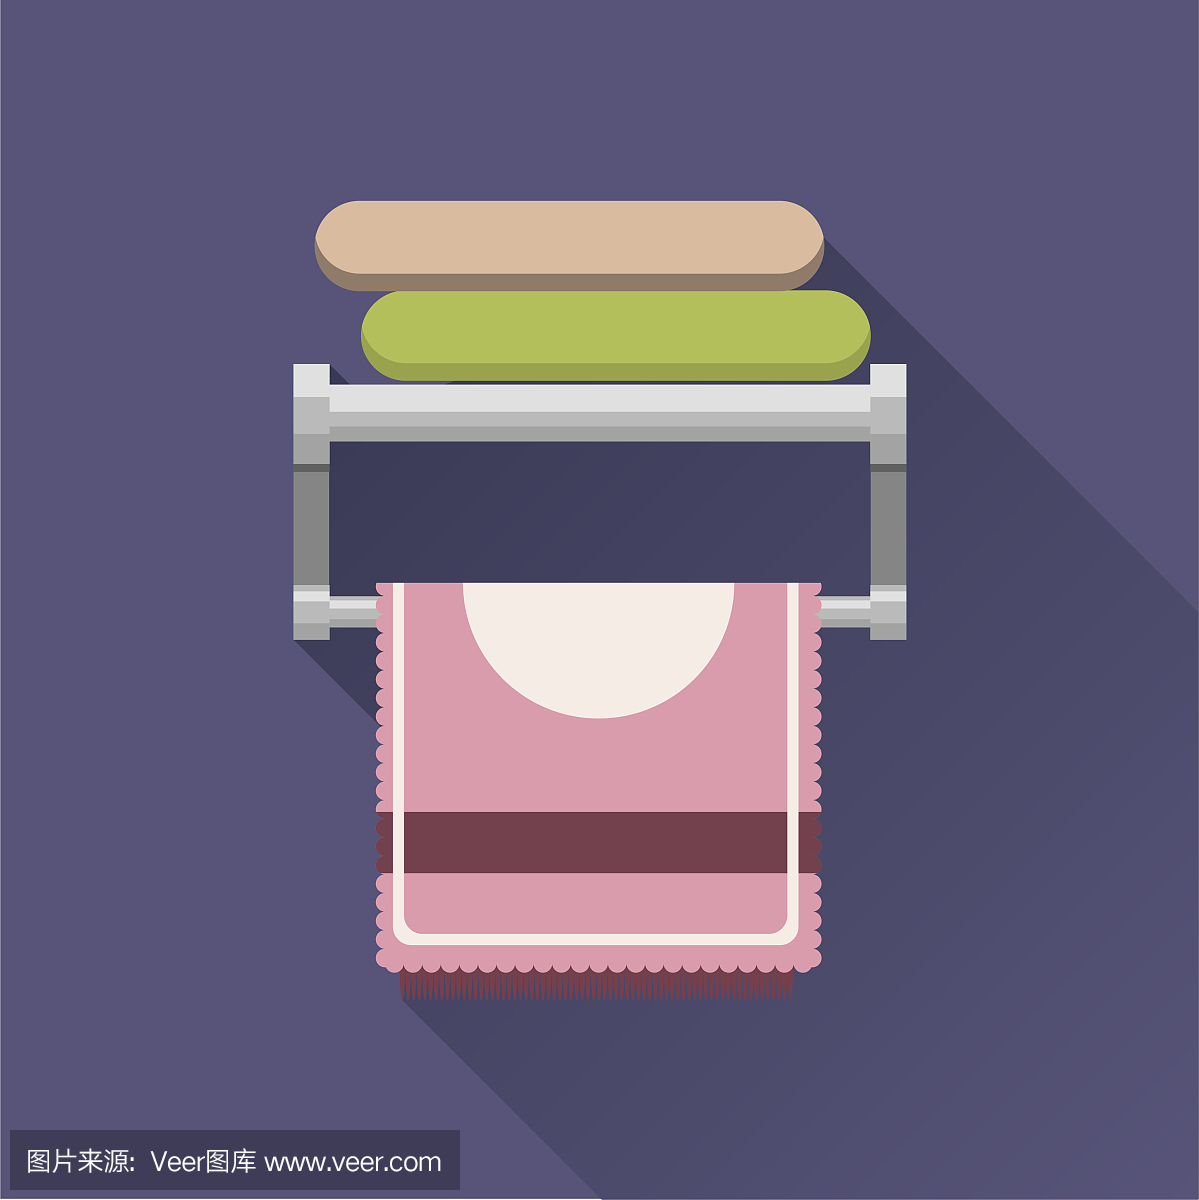 浴室金属衣架上的毛巾。绿色和粉红色的毛巾躺着,一条粉红色的挂着。